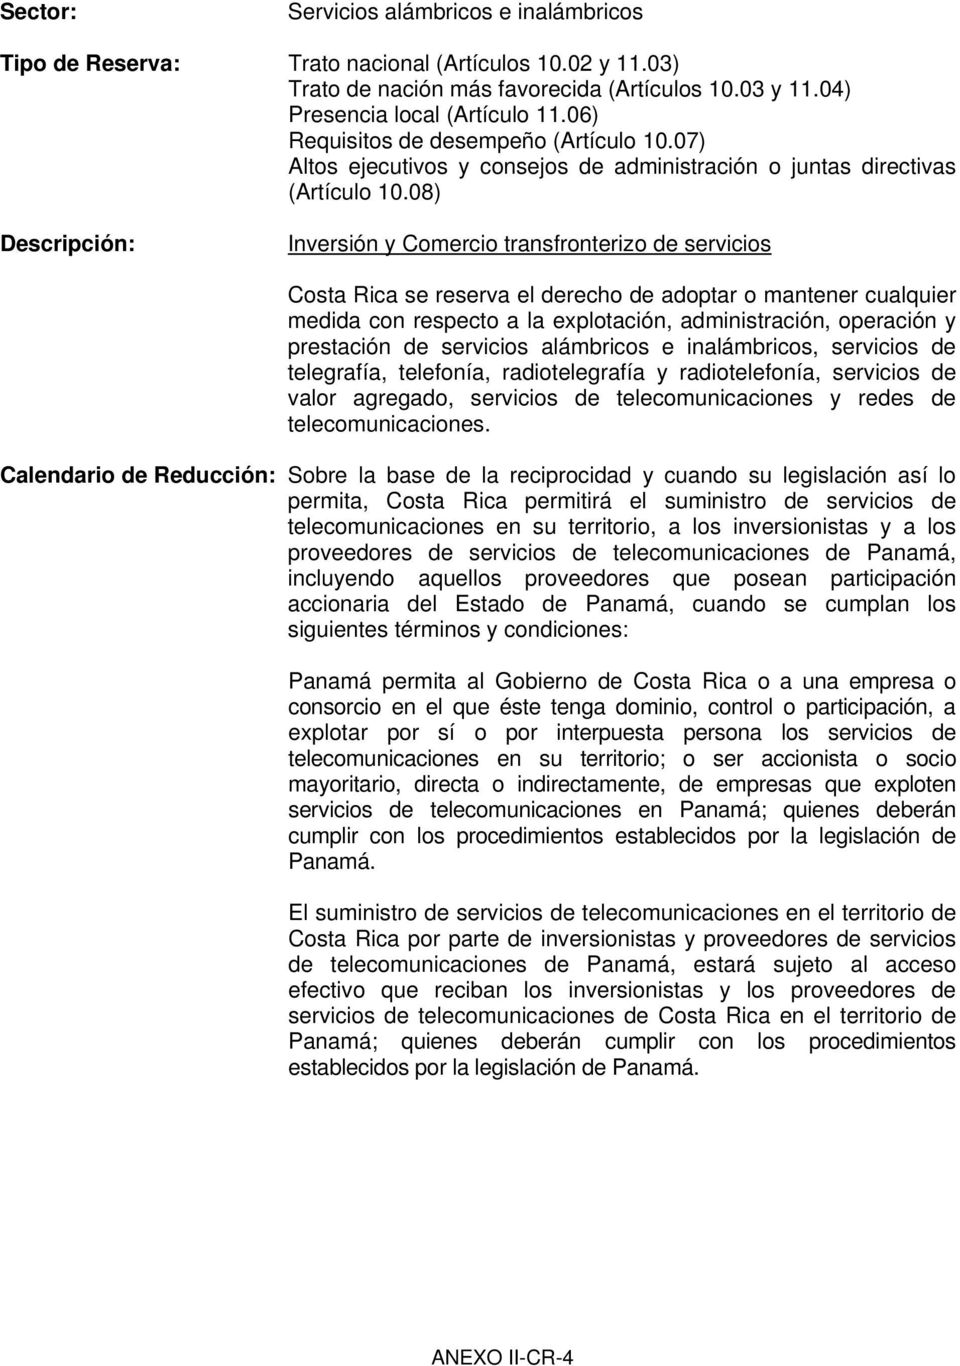 Calendario de Reducción: Sobre la base de la reciprocidad y cuando su legislación así lo permita, Costa Rica permitirá el suministro de servicios de telecomunicaciones en su territorio, a los